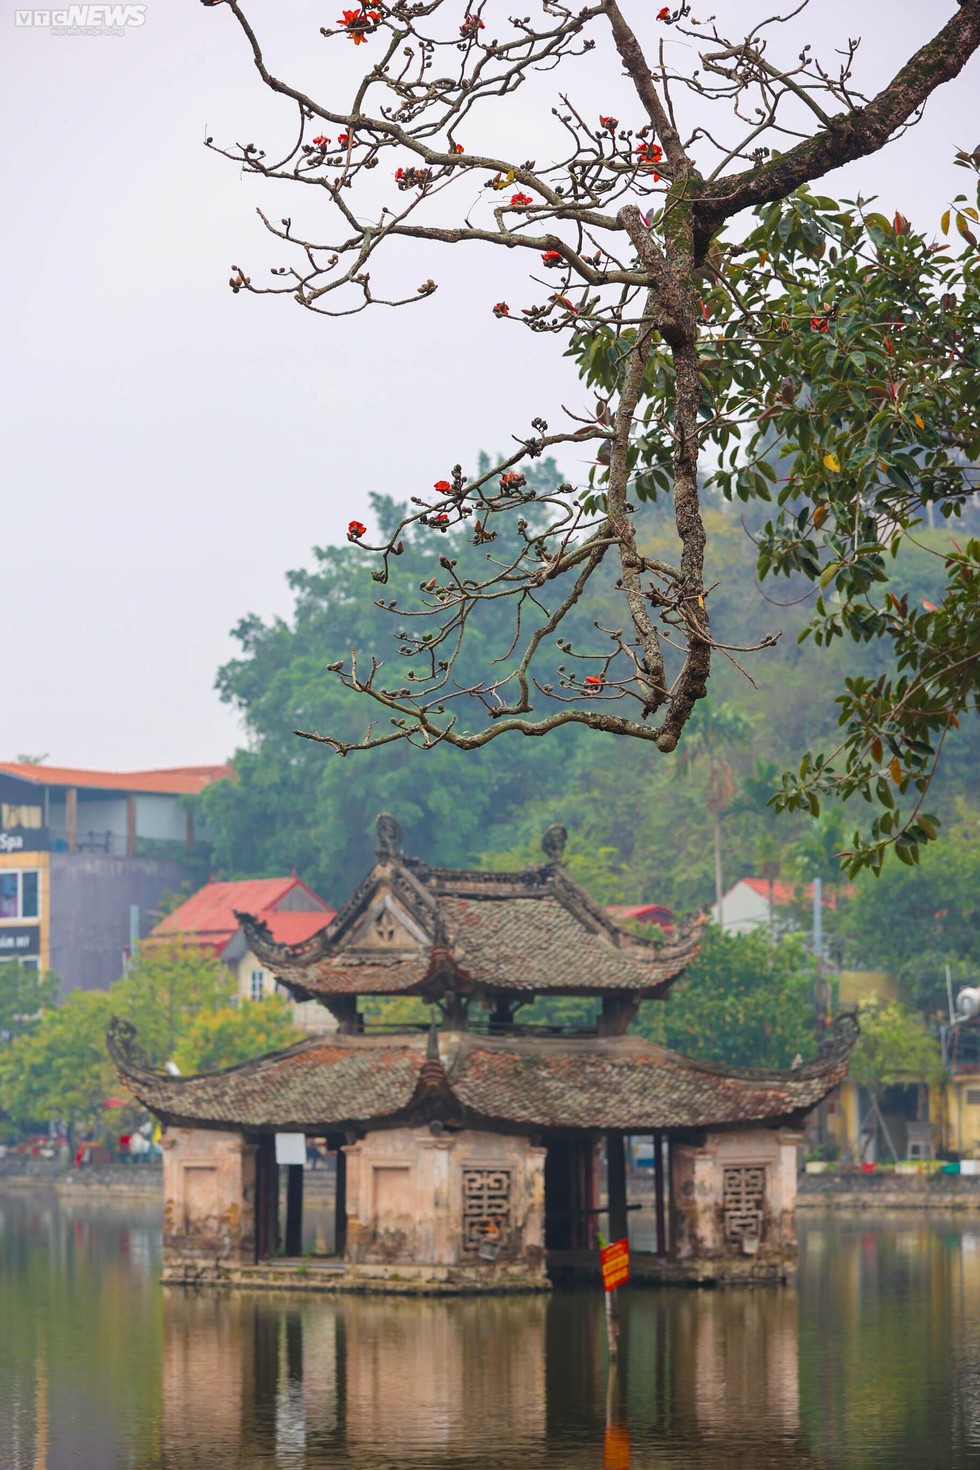 Ngôi chùa nghìn năm tuổi ở Hà Nội nên thơ với sắc đỏ hoa gạo - Ảnh 3.